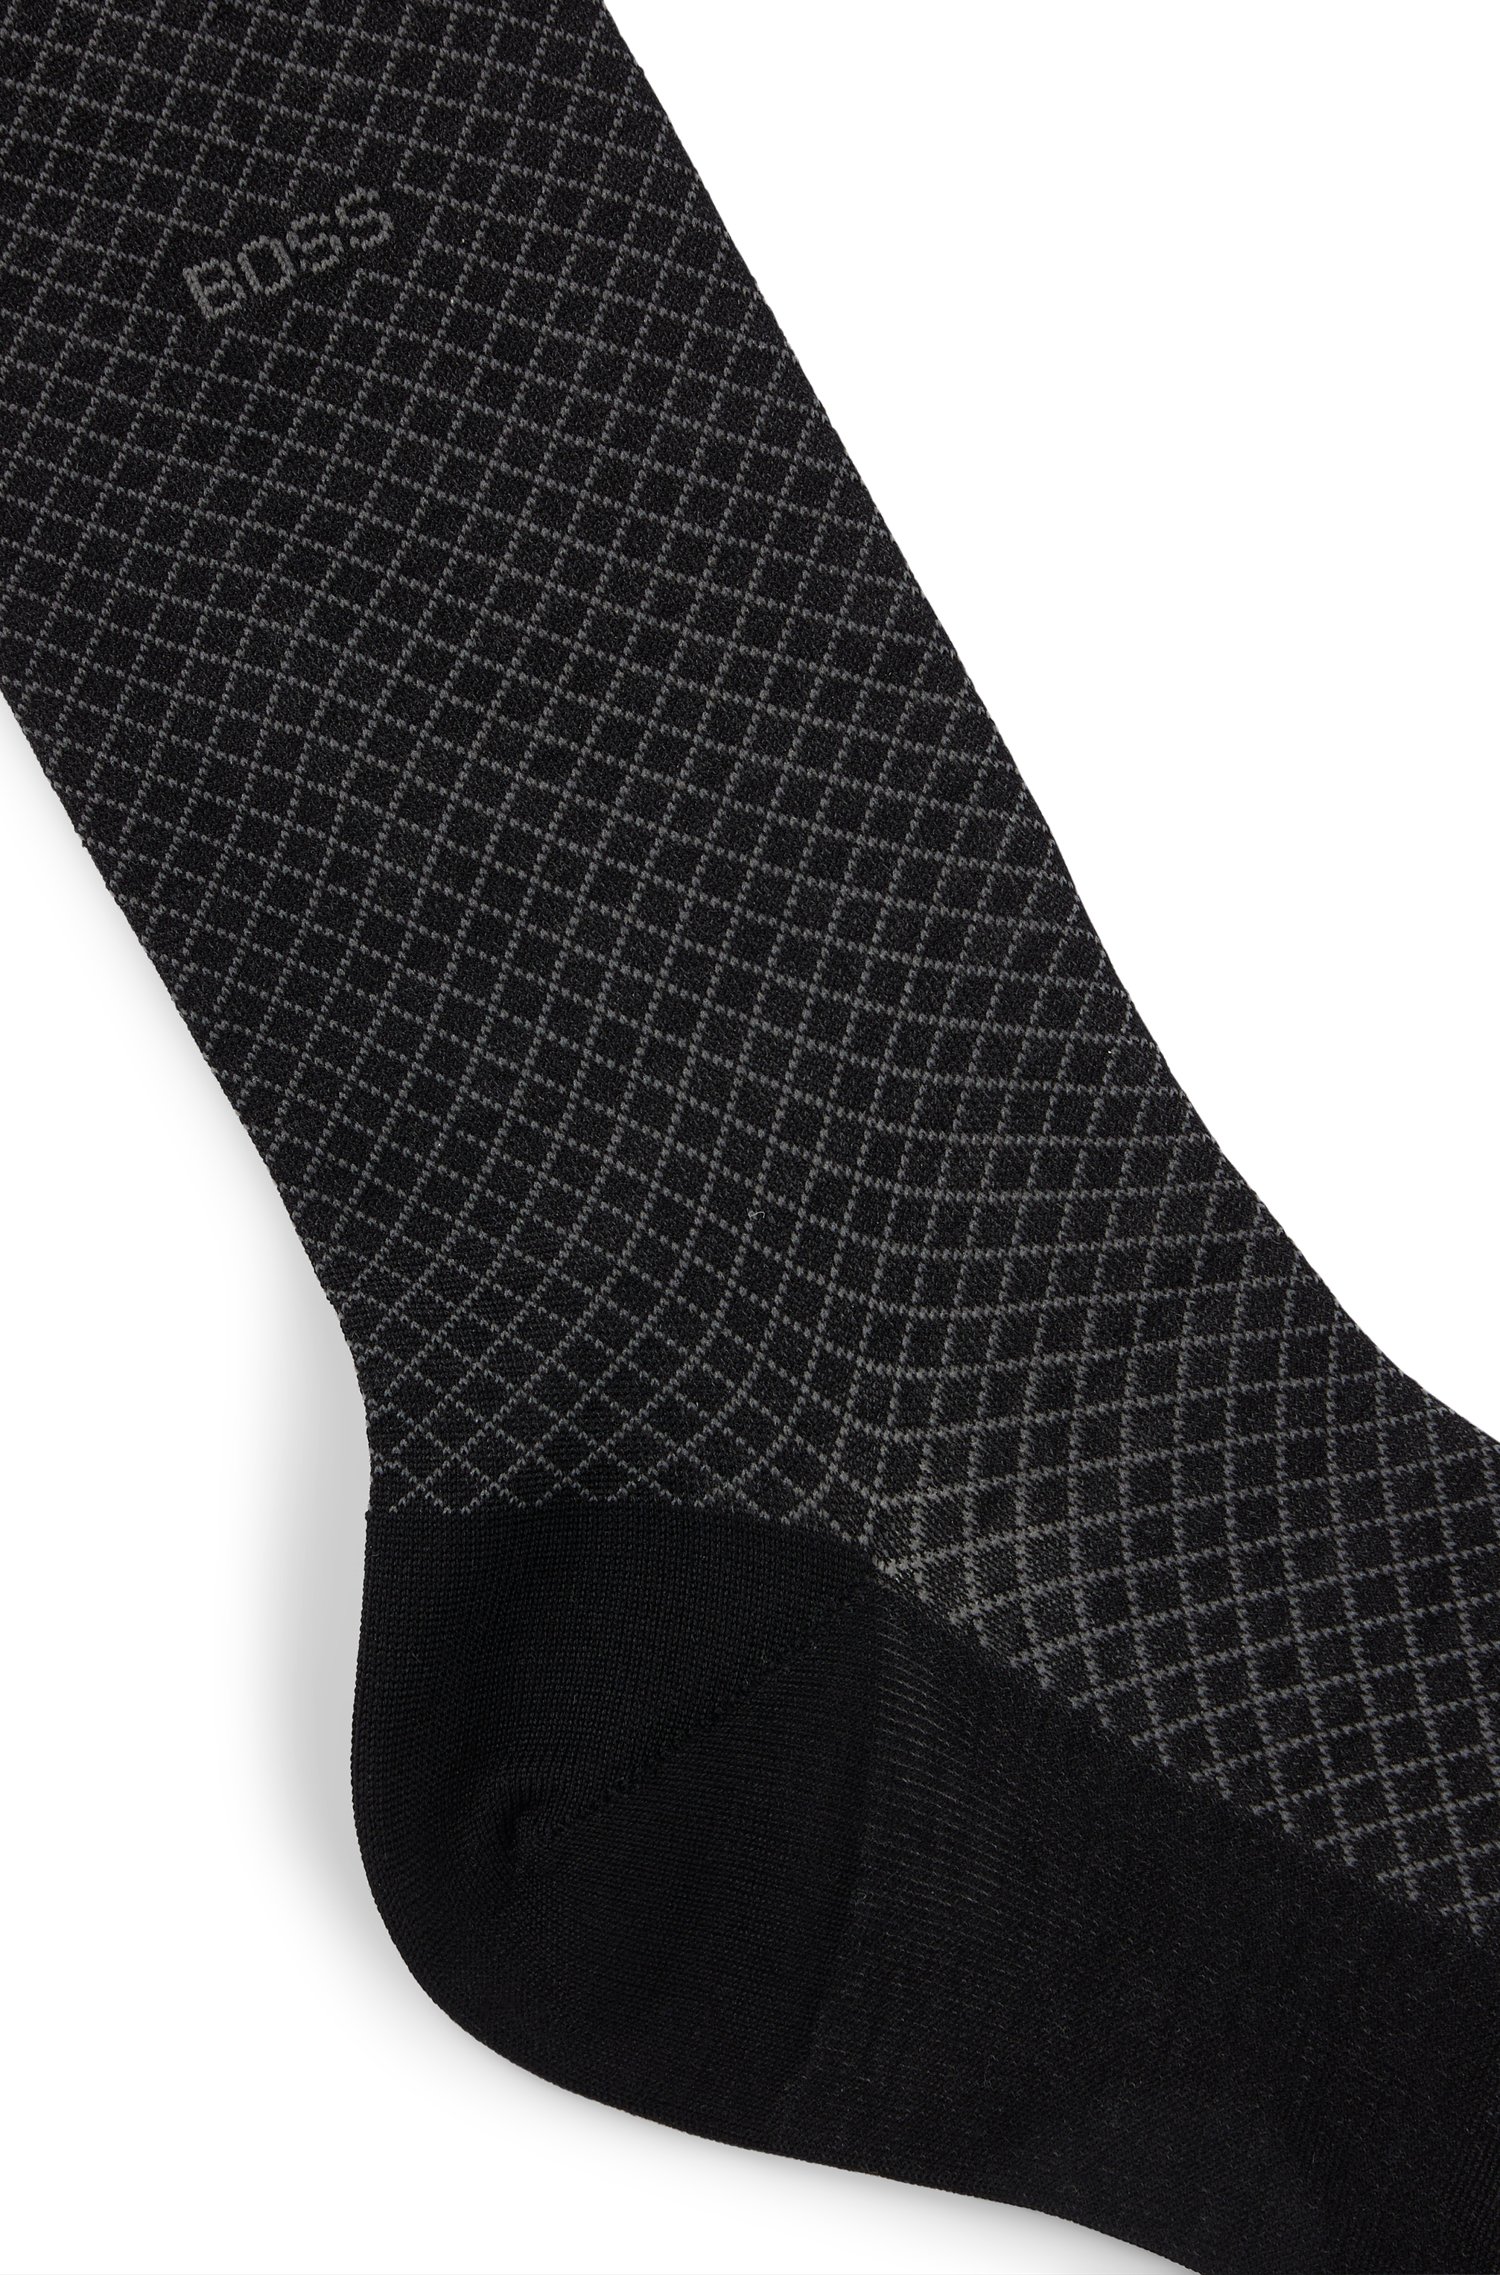 Regular-length patterned socks in a mercerized-cotton blend